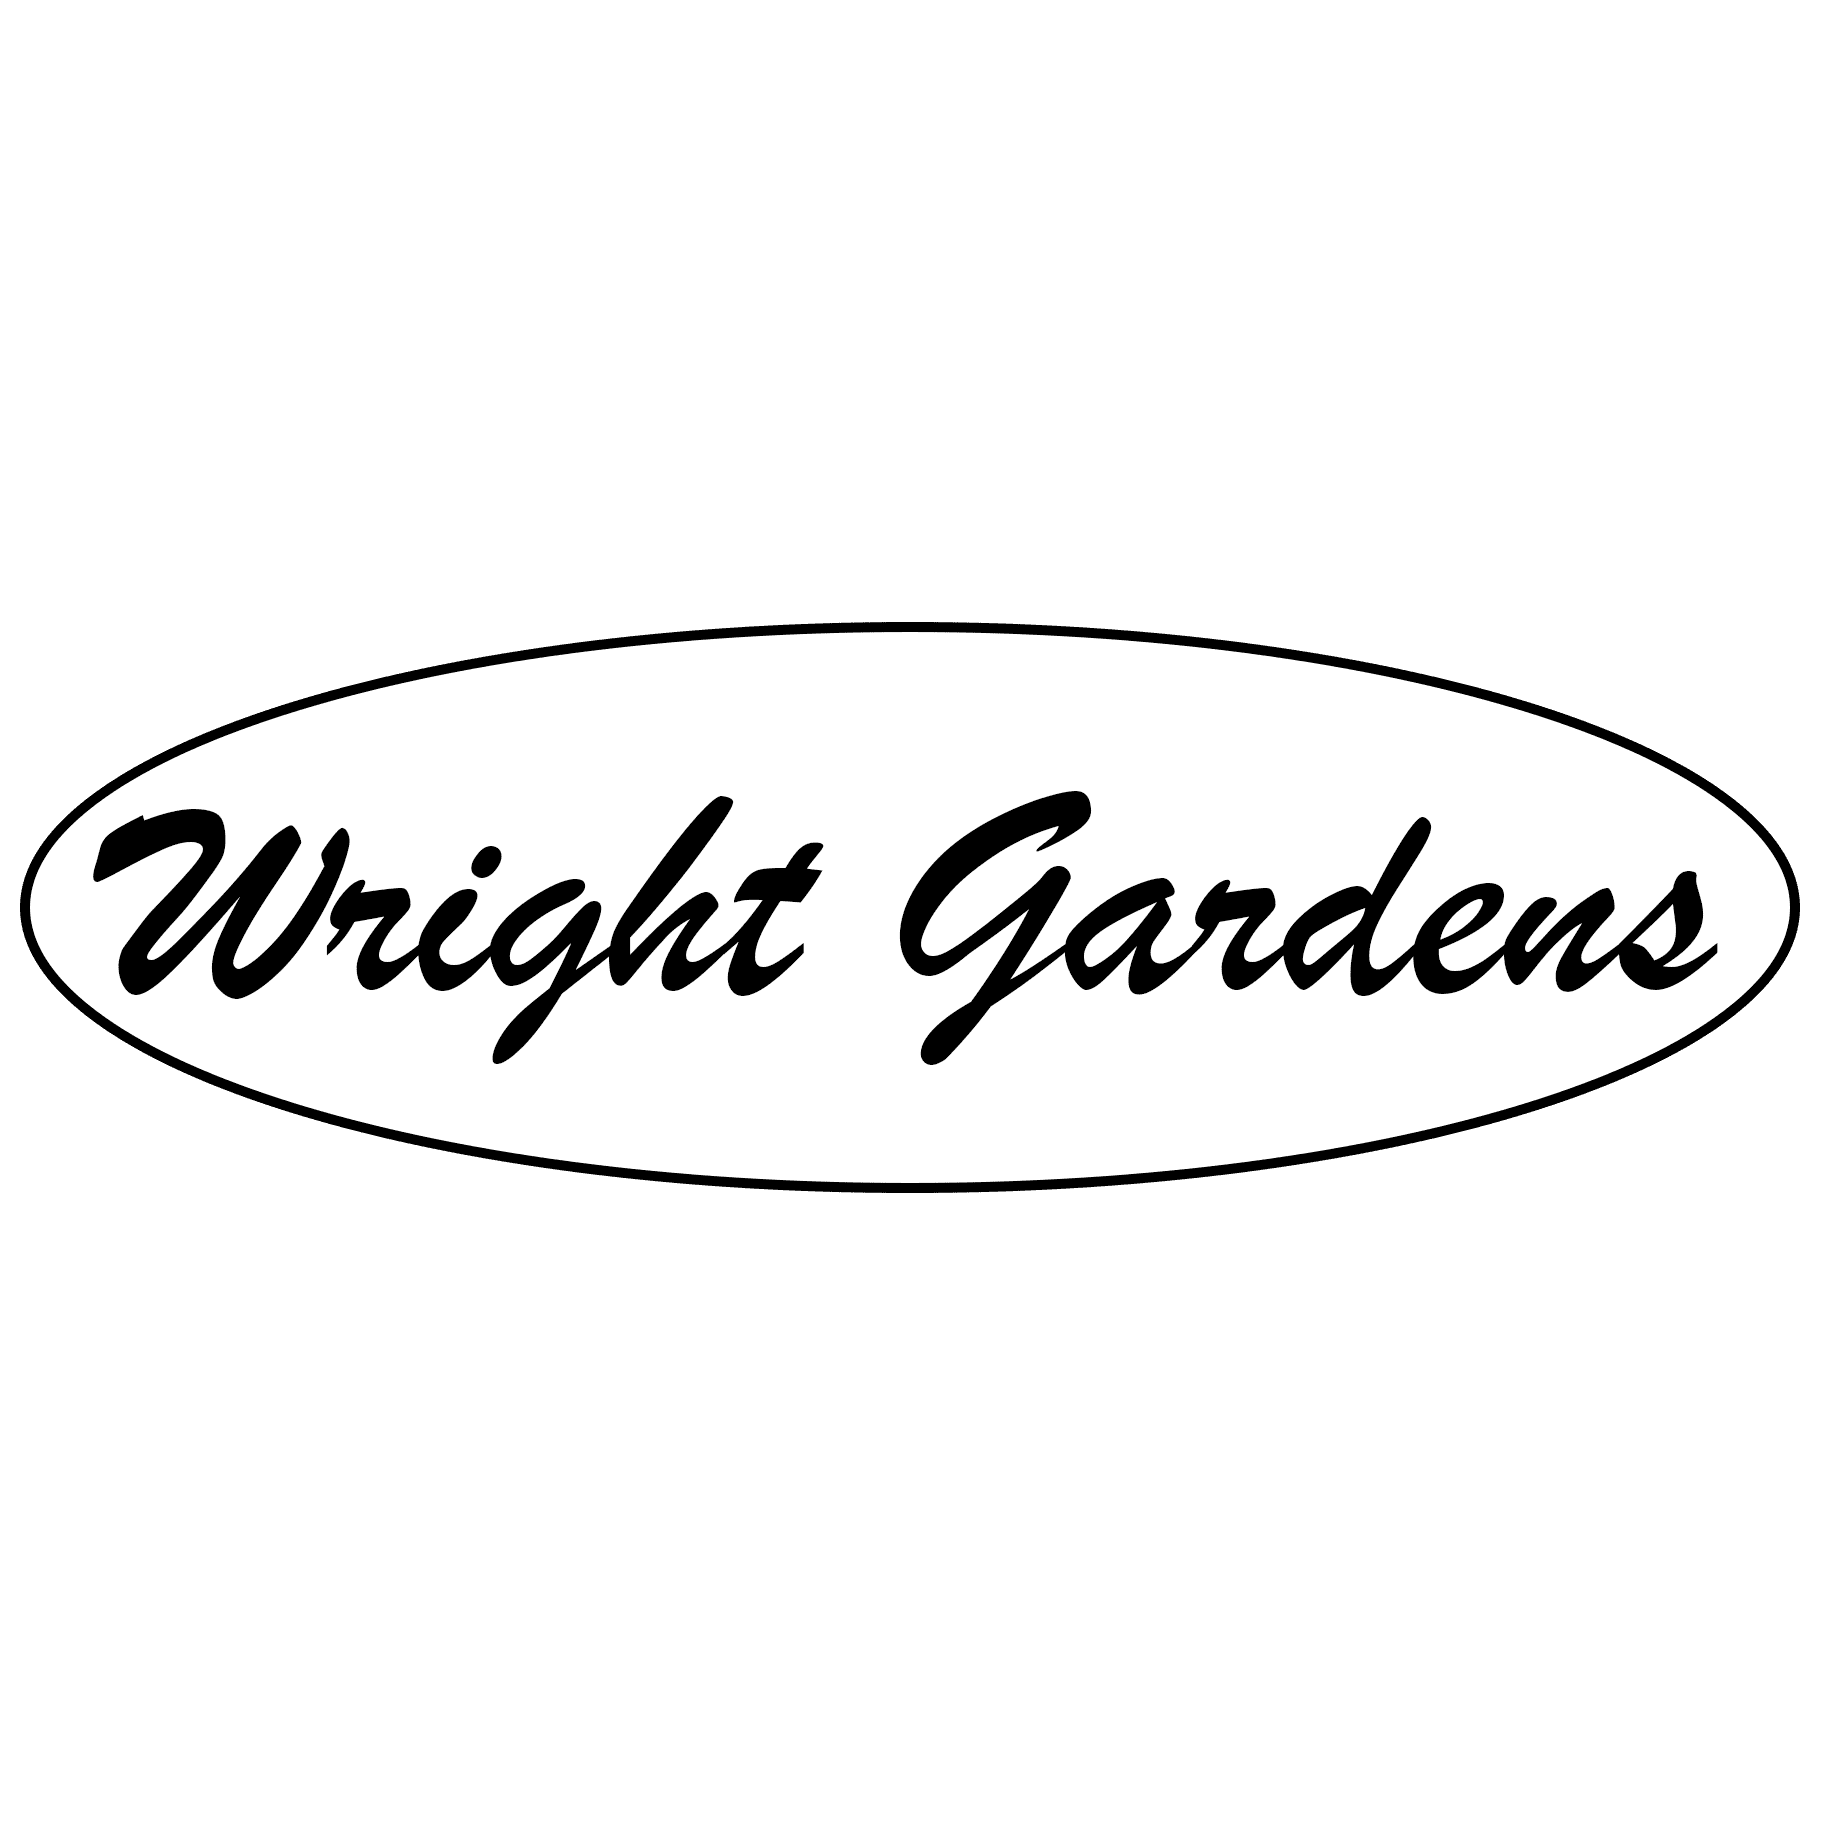 (c) Wrightgardens.com